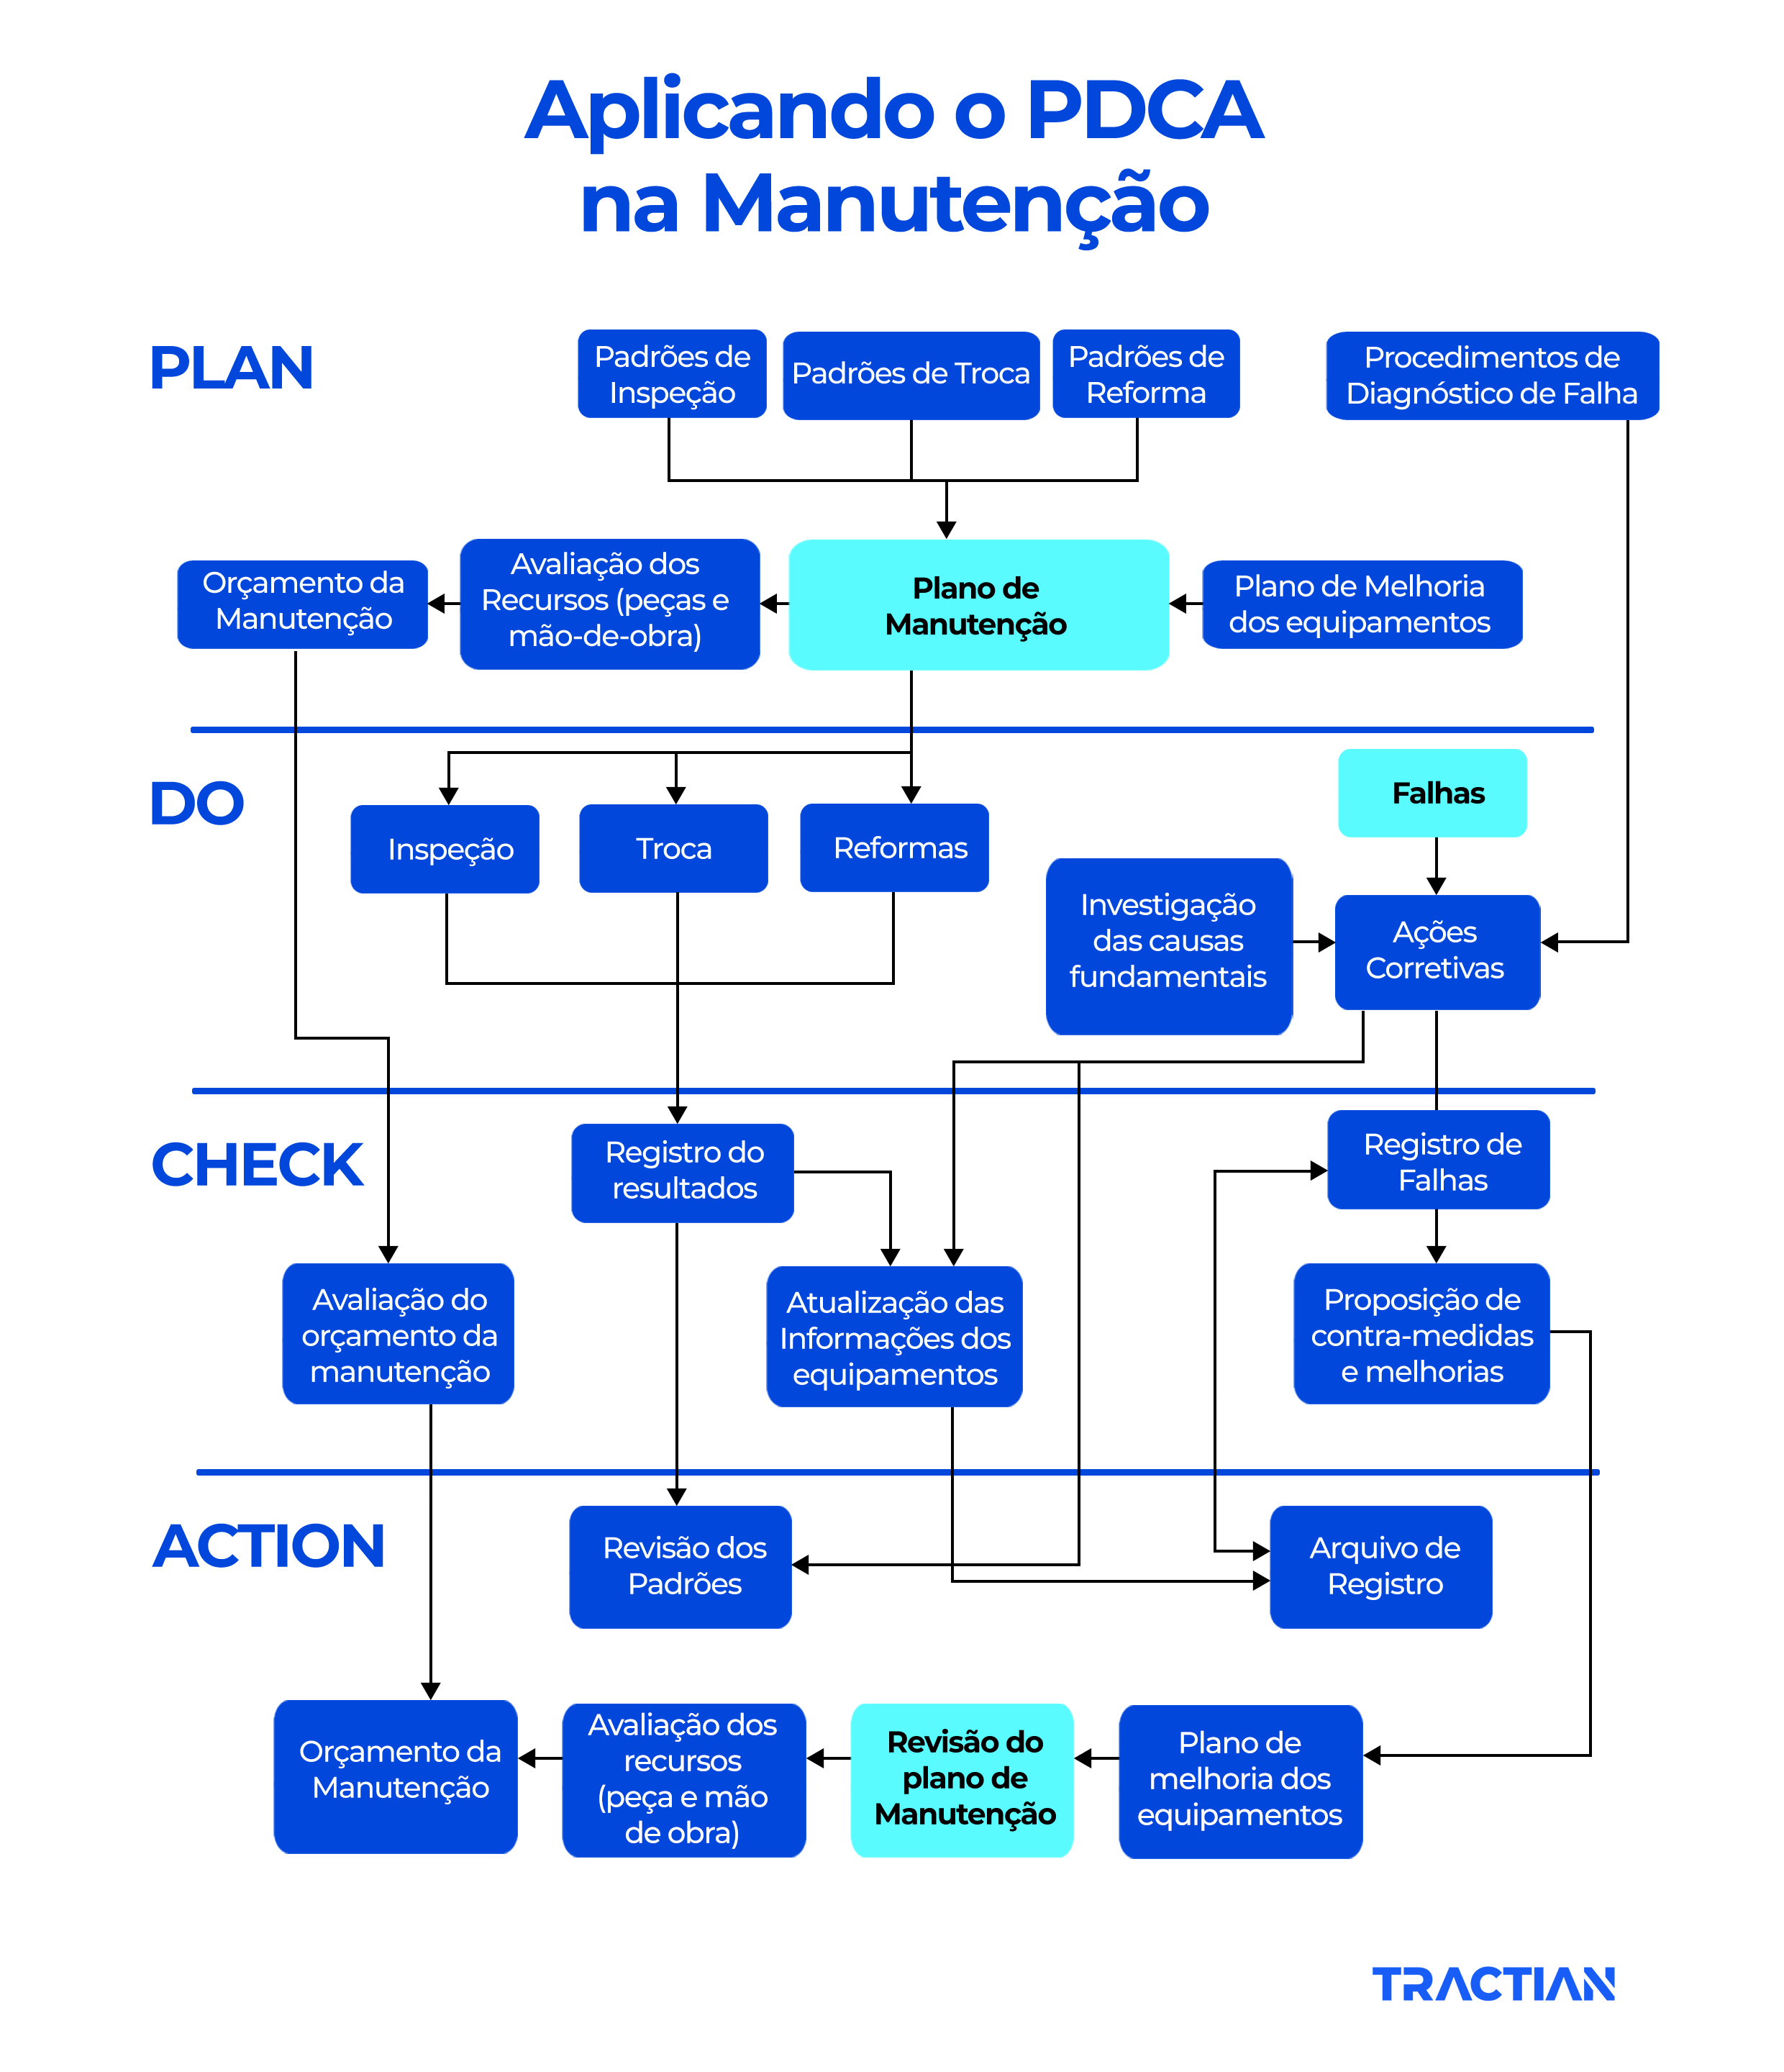 Plano de ação: Como aplicar o PDCA na manutenção na prática plan, do, chack e action